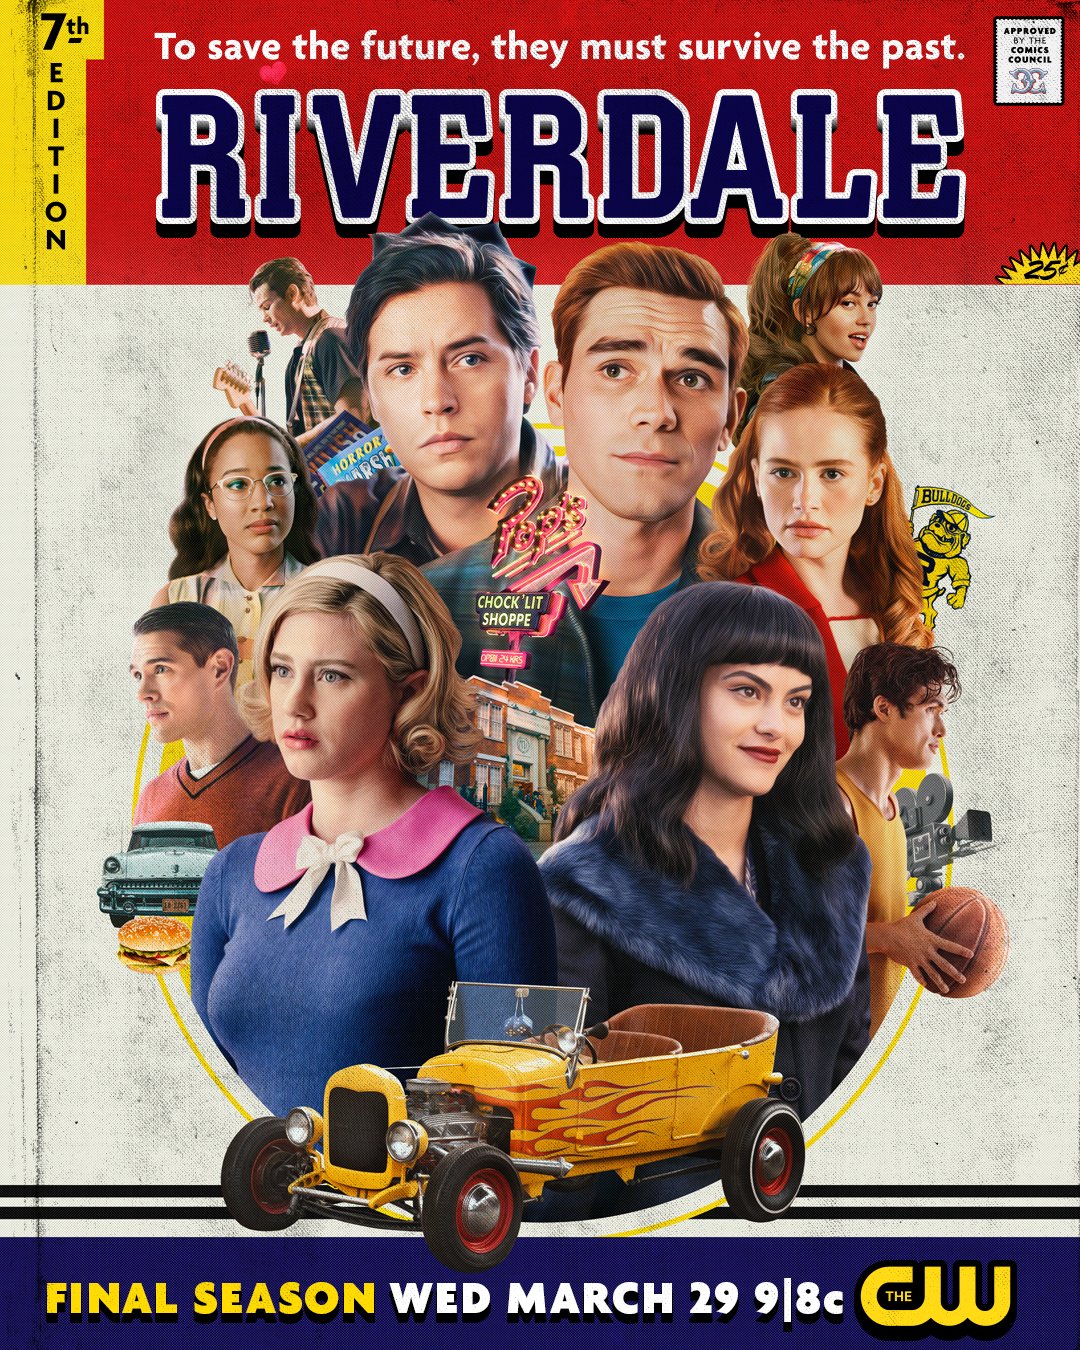 Onde ver a estreia da última temporada de "Riverdale"?